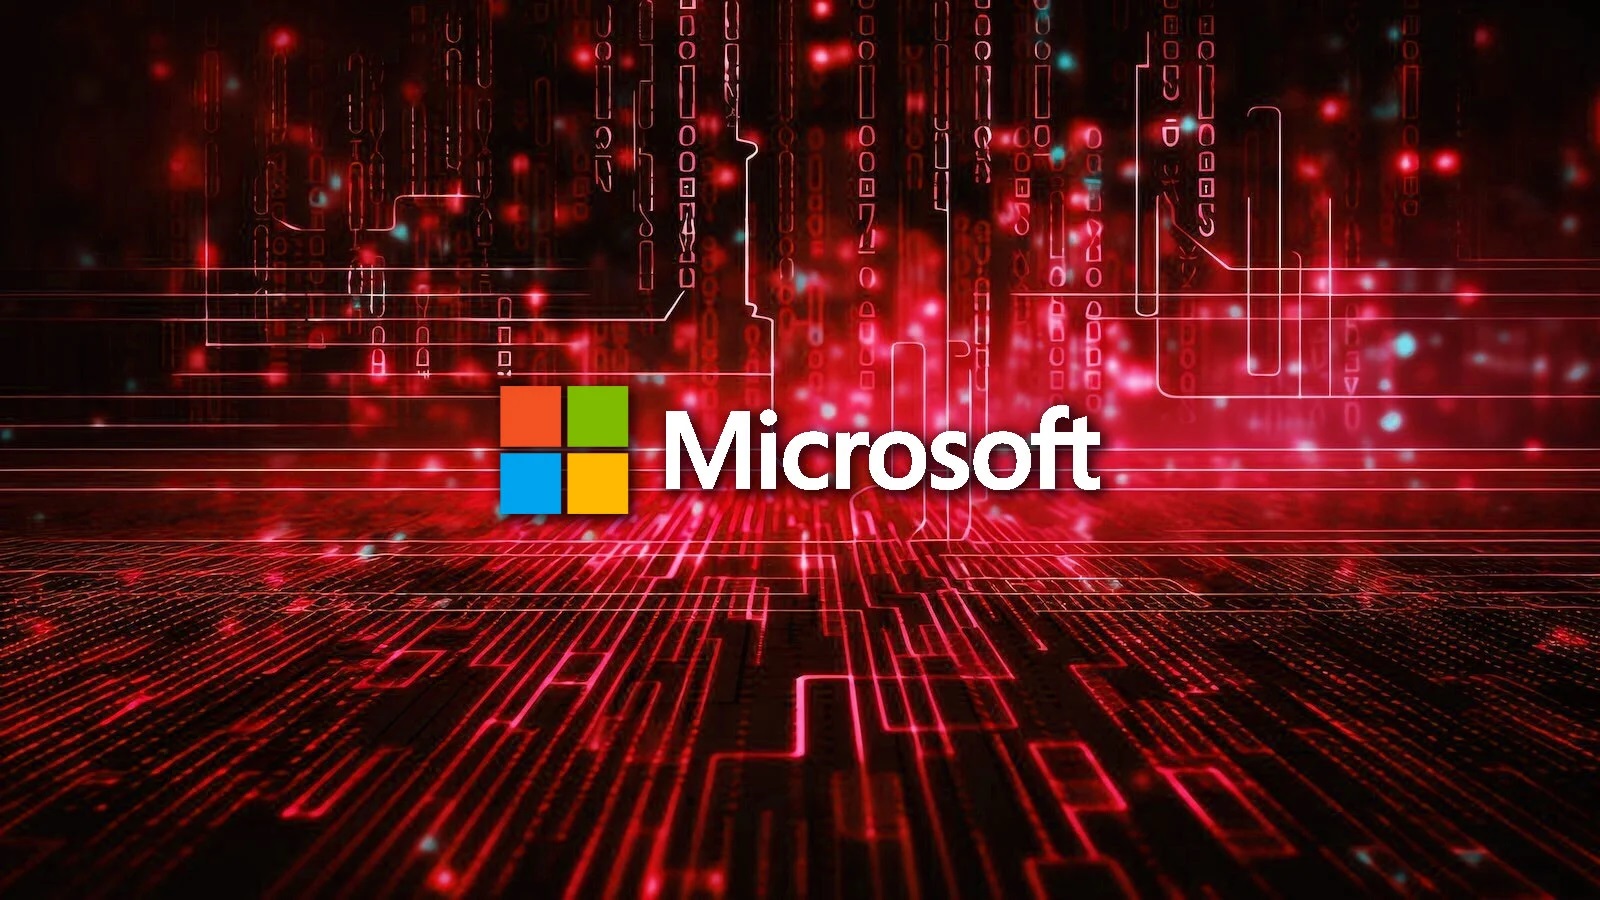 Microsoft patents typing technology using gaze